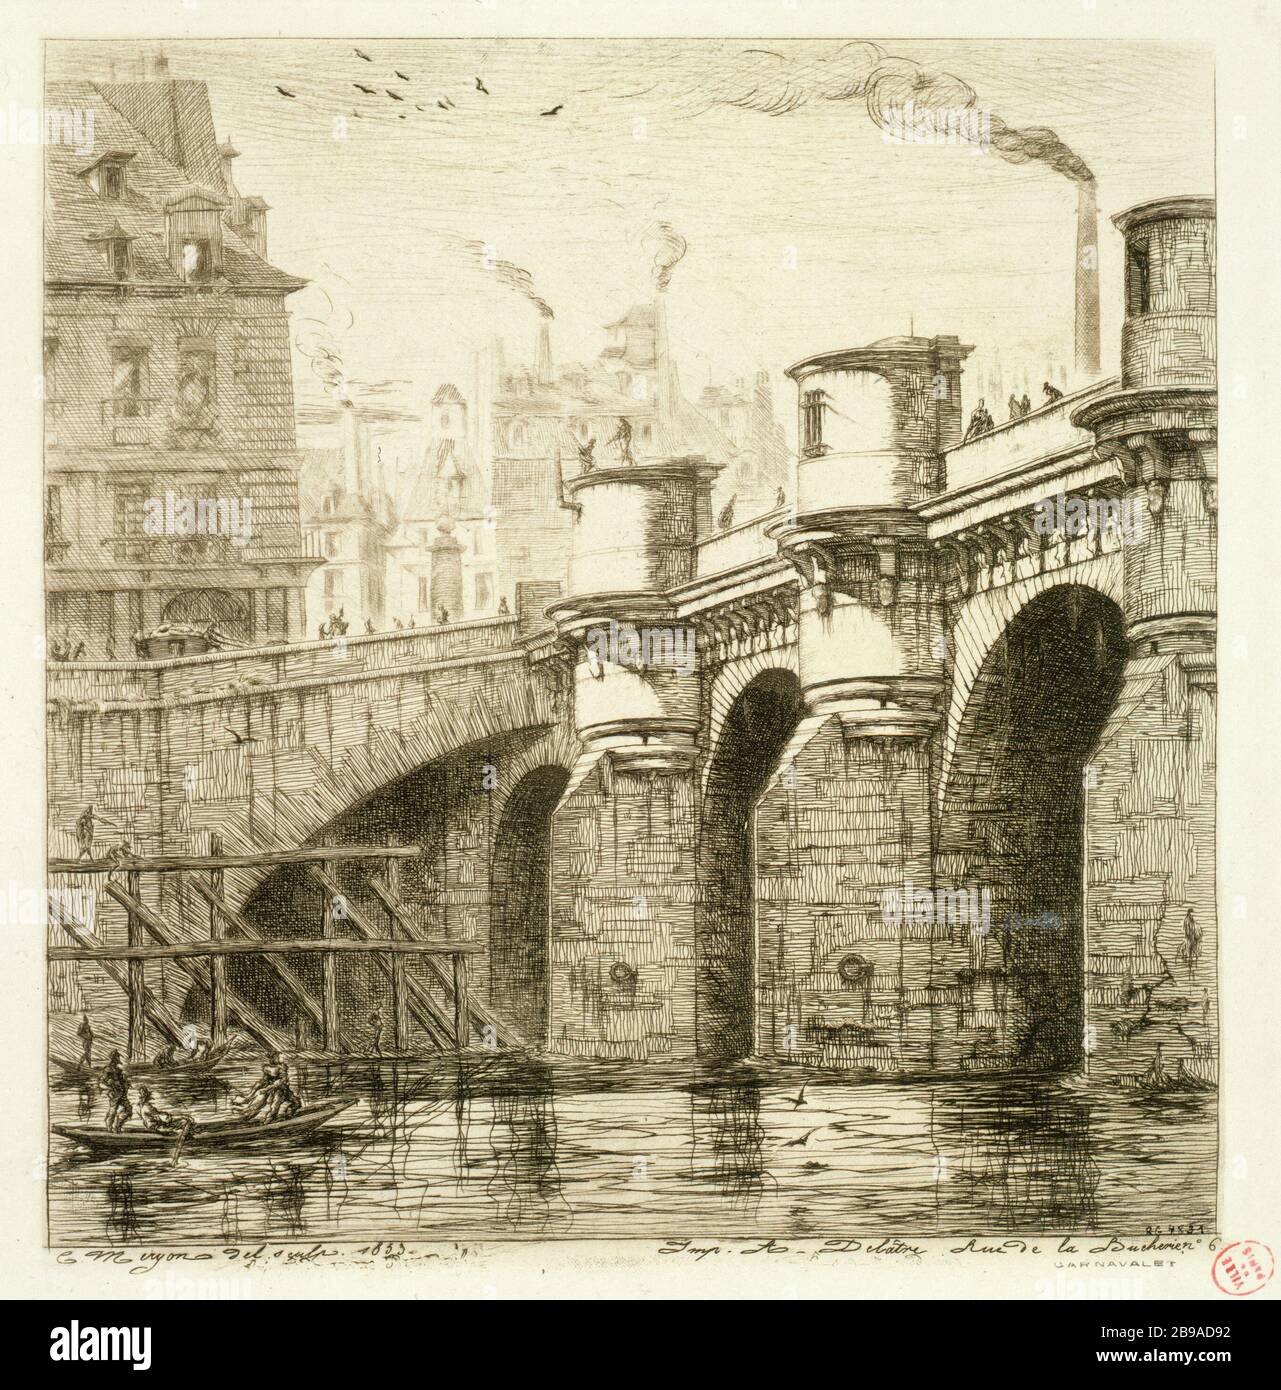 PONTE NOVE NEL 1853 Charles Méryon (1821-1868). "Le Pont-Neuf en 1853". Eau-forte. Parigi, musée Carnavalet. Foto Stock